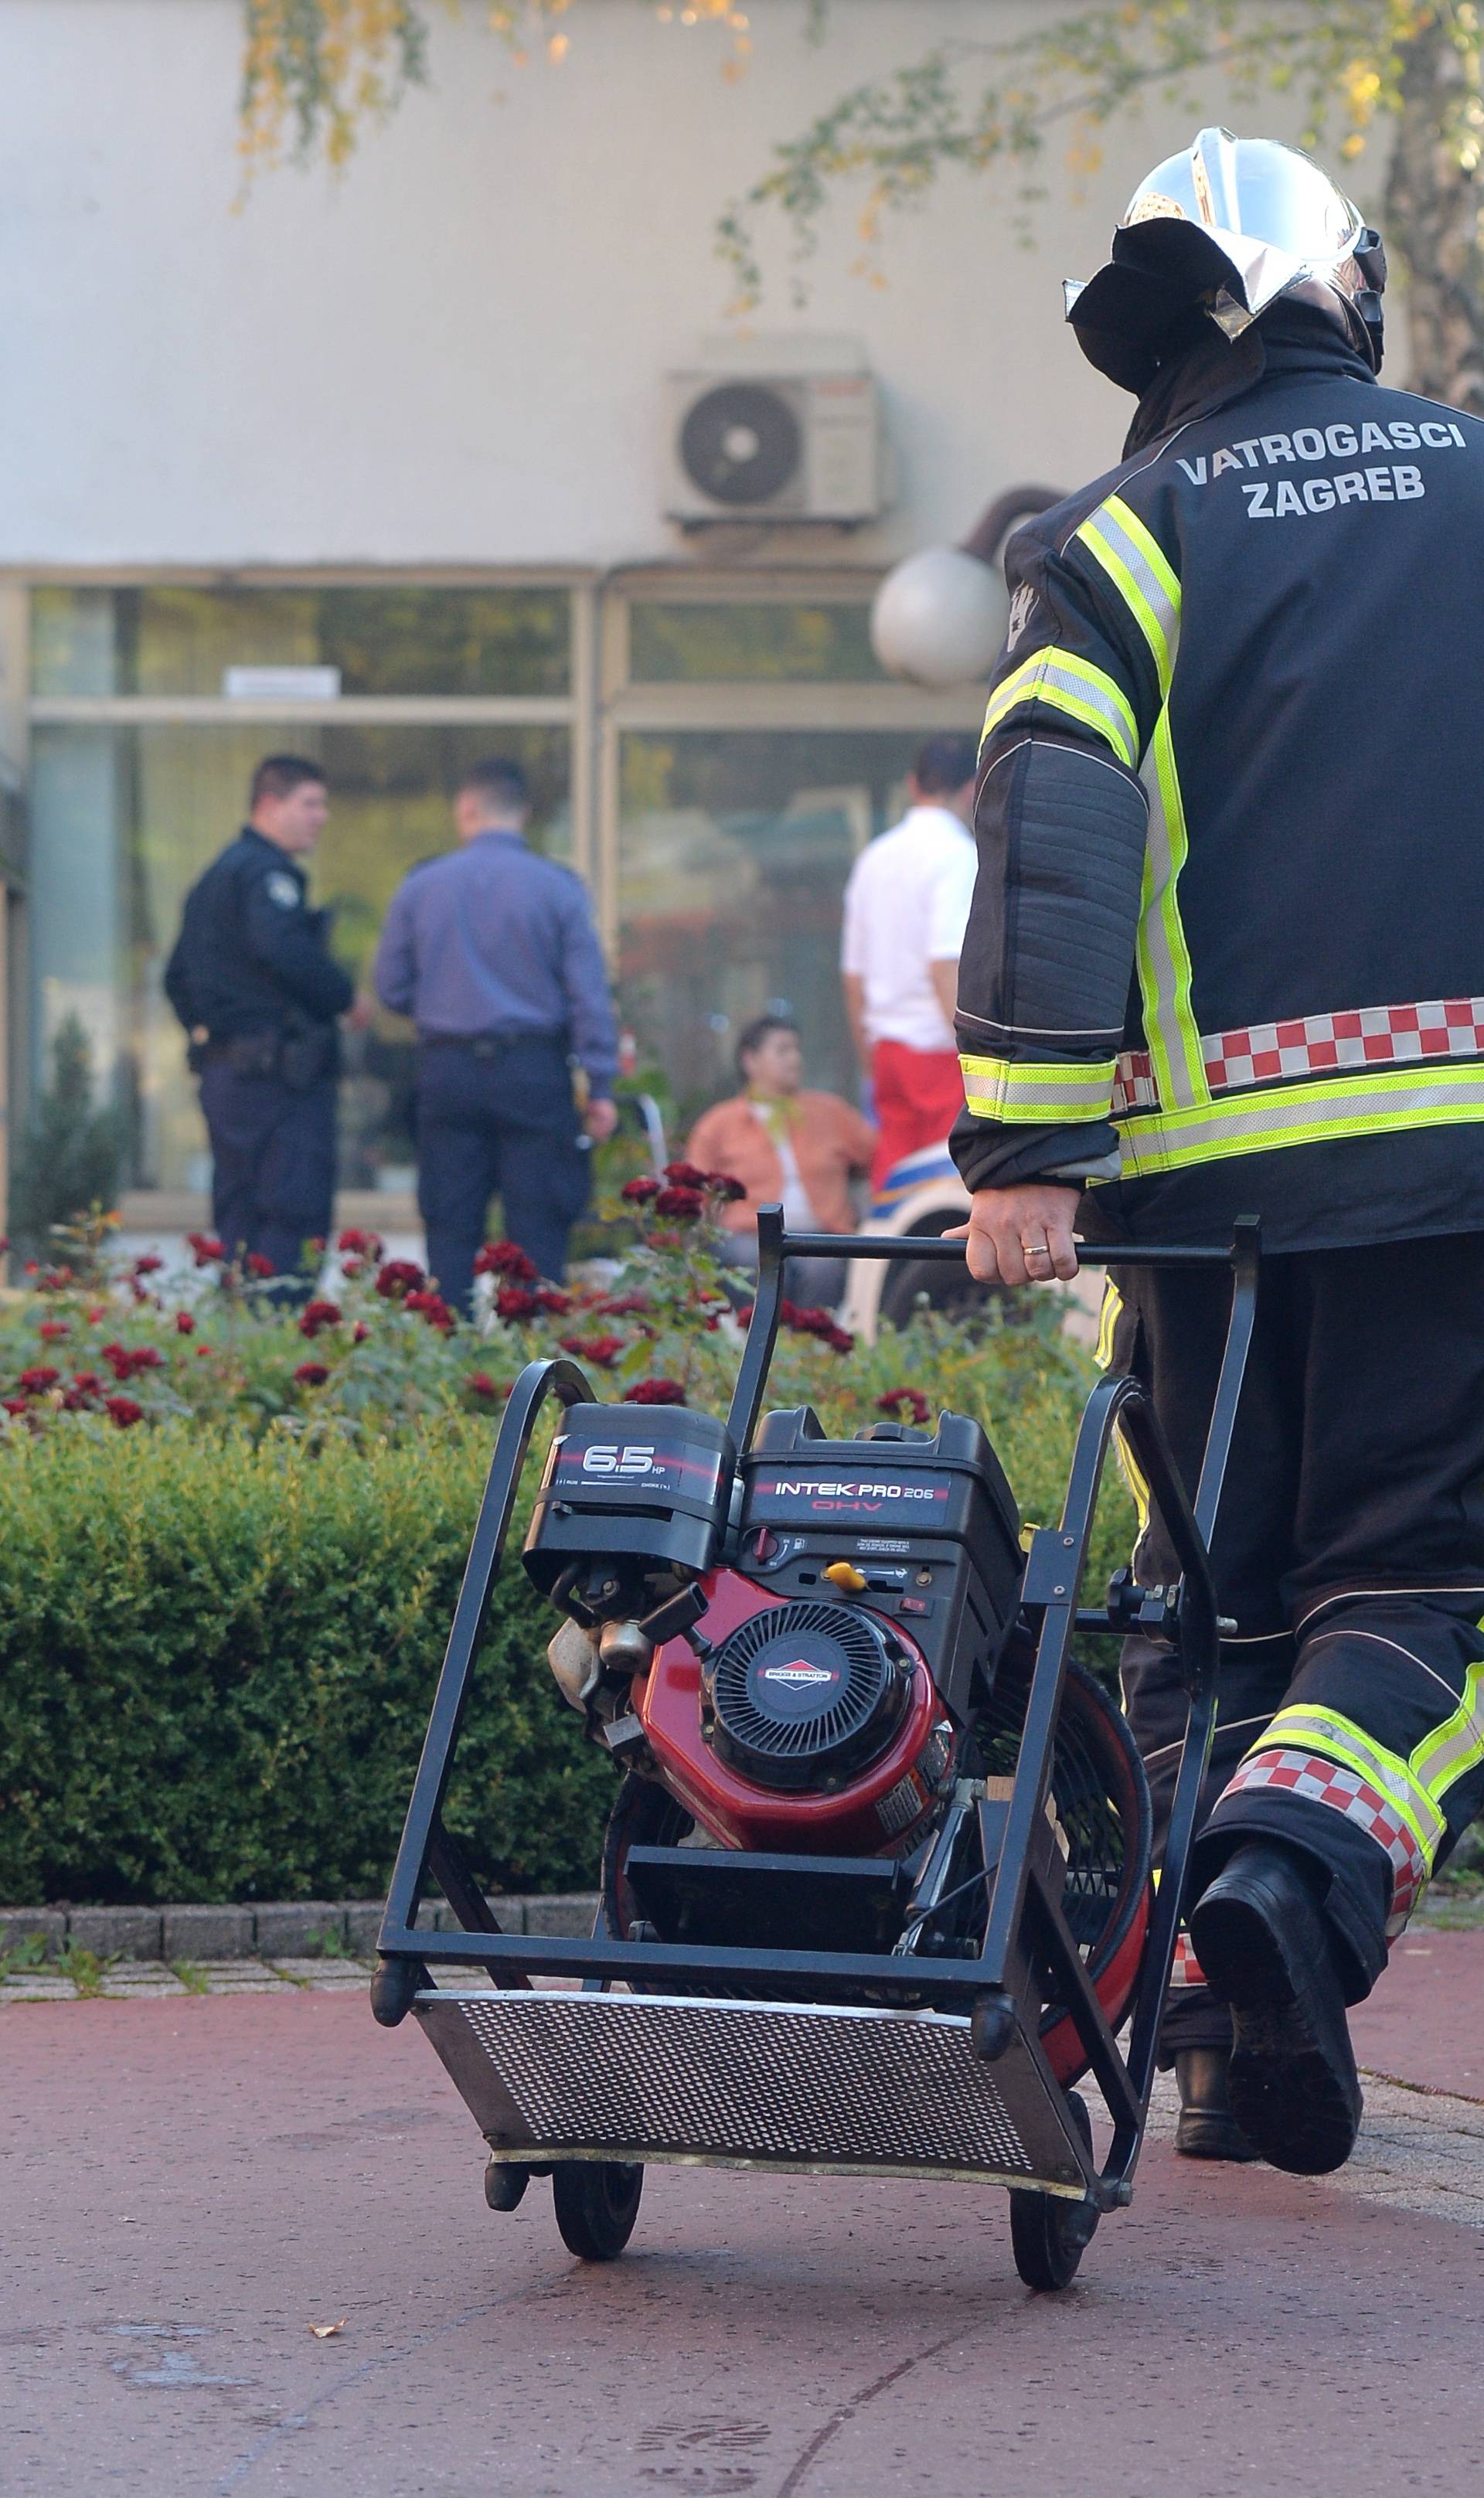 Zbog požara evakuirali Dom za starije Sveti Josip u Zagrebu